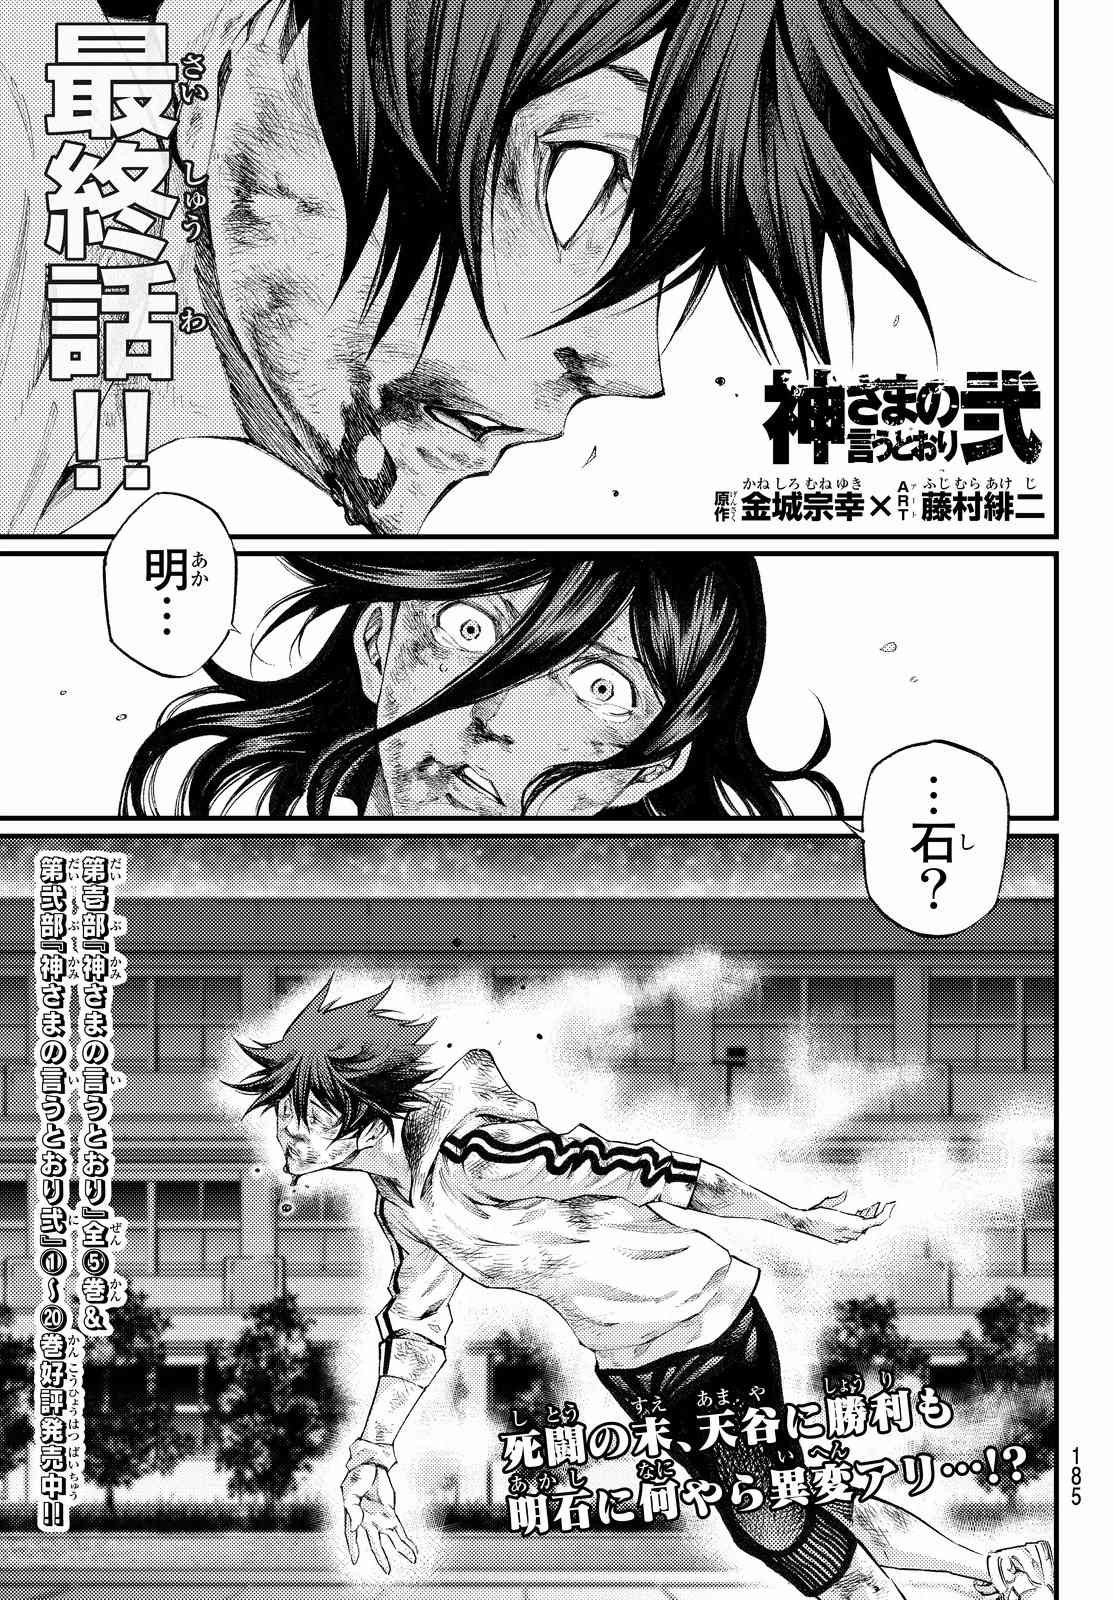 Kamisama no Ituori - Chapter Final - Page 1